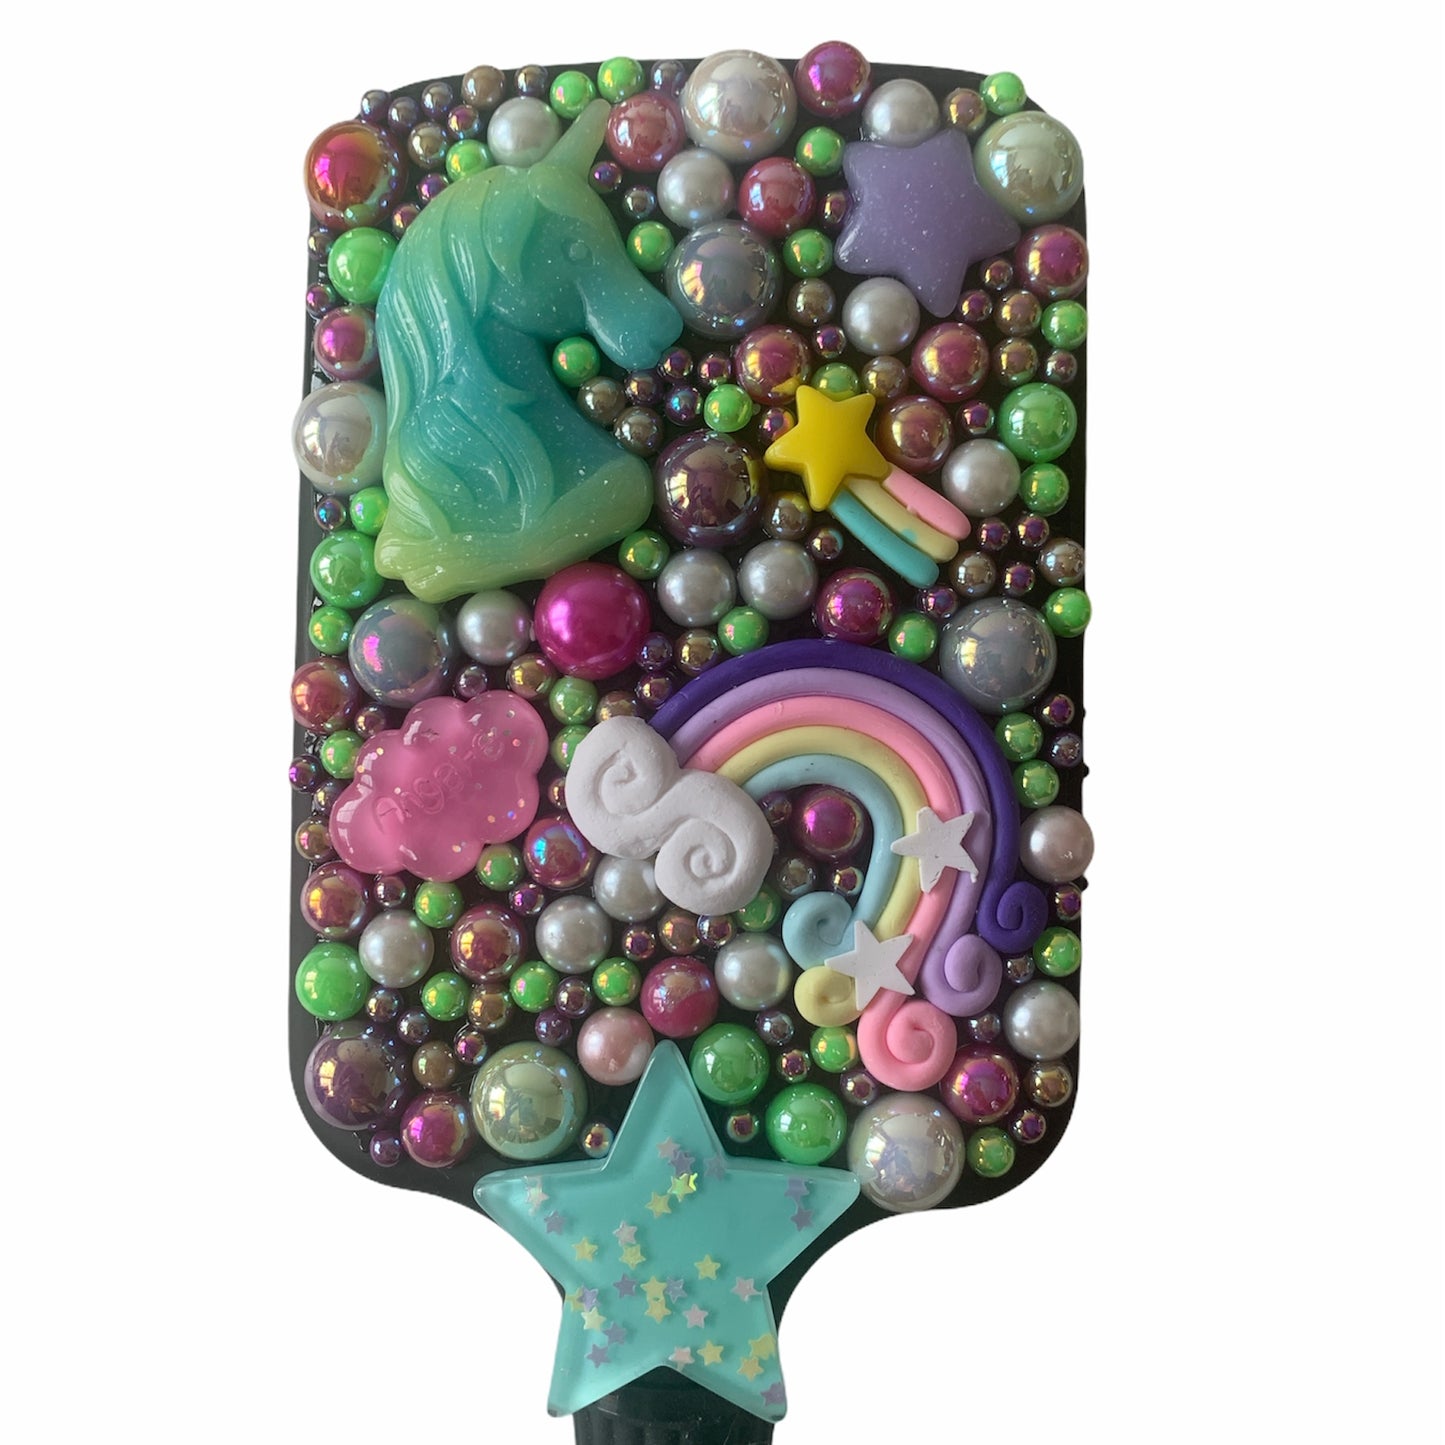 Green unicorn hairbrush